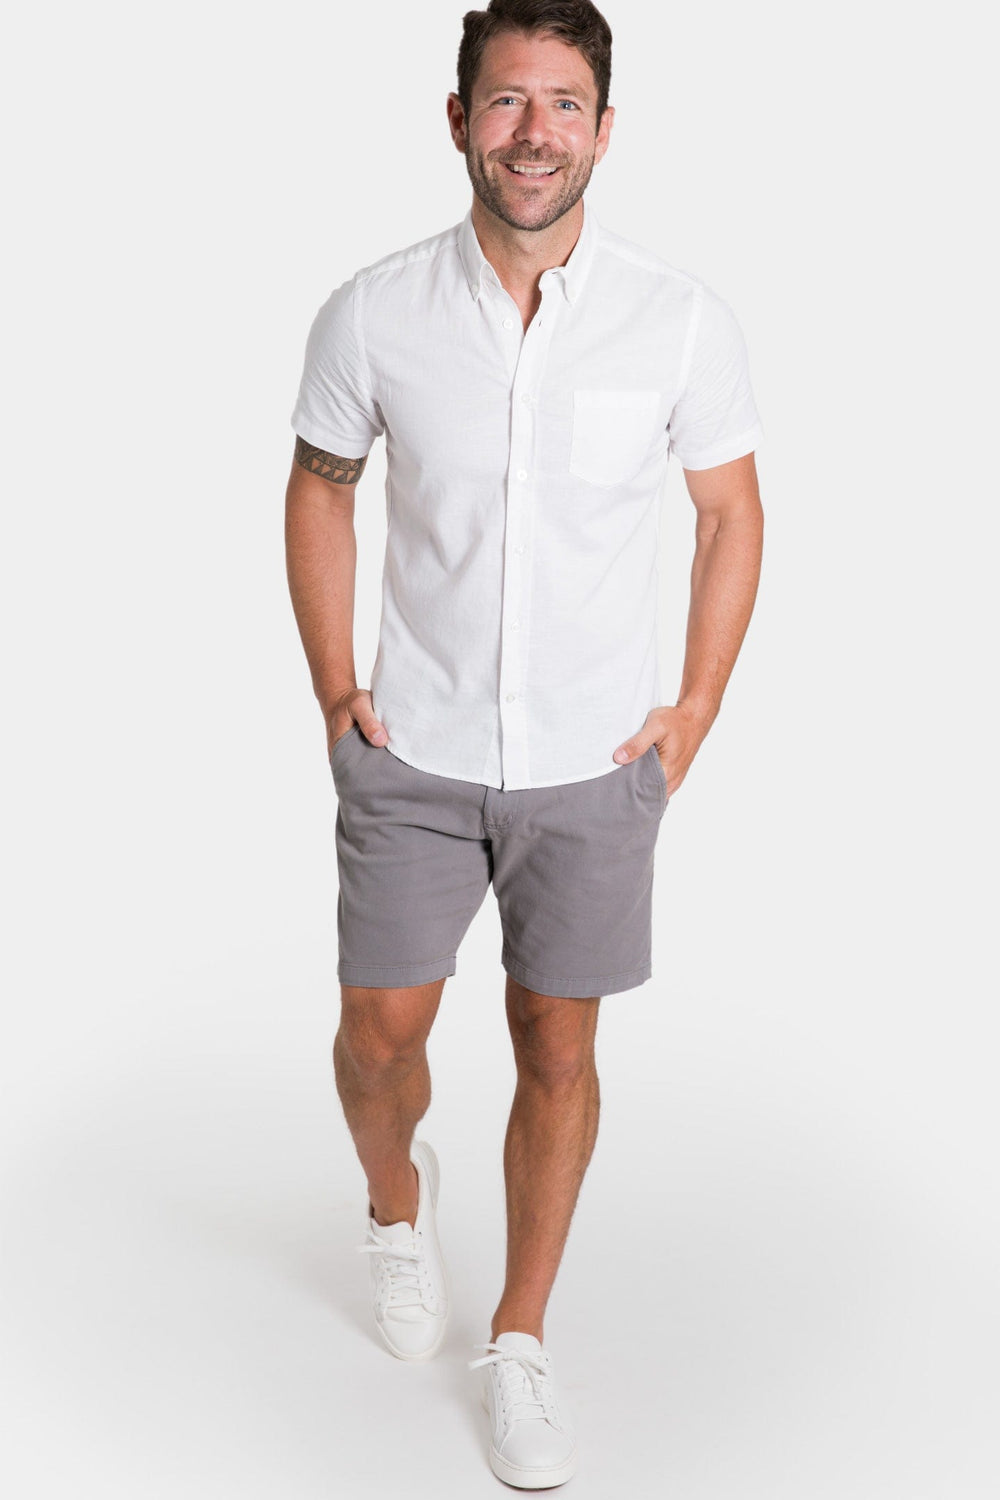 Ash & Erie White Linen Short Sleeve Shirt for Short Men   Short Sleeve Everyday Shirts